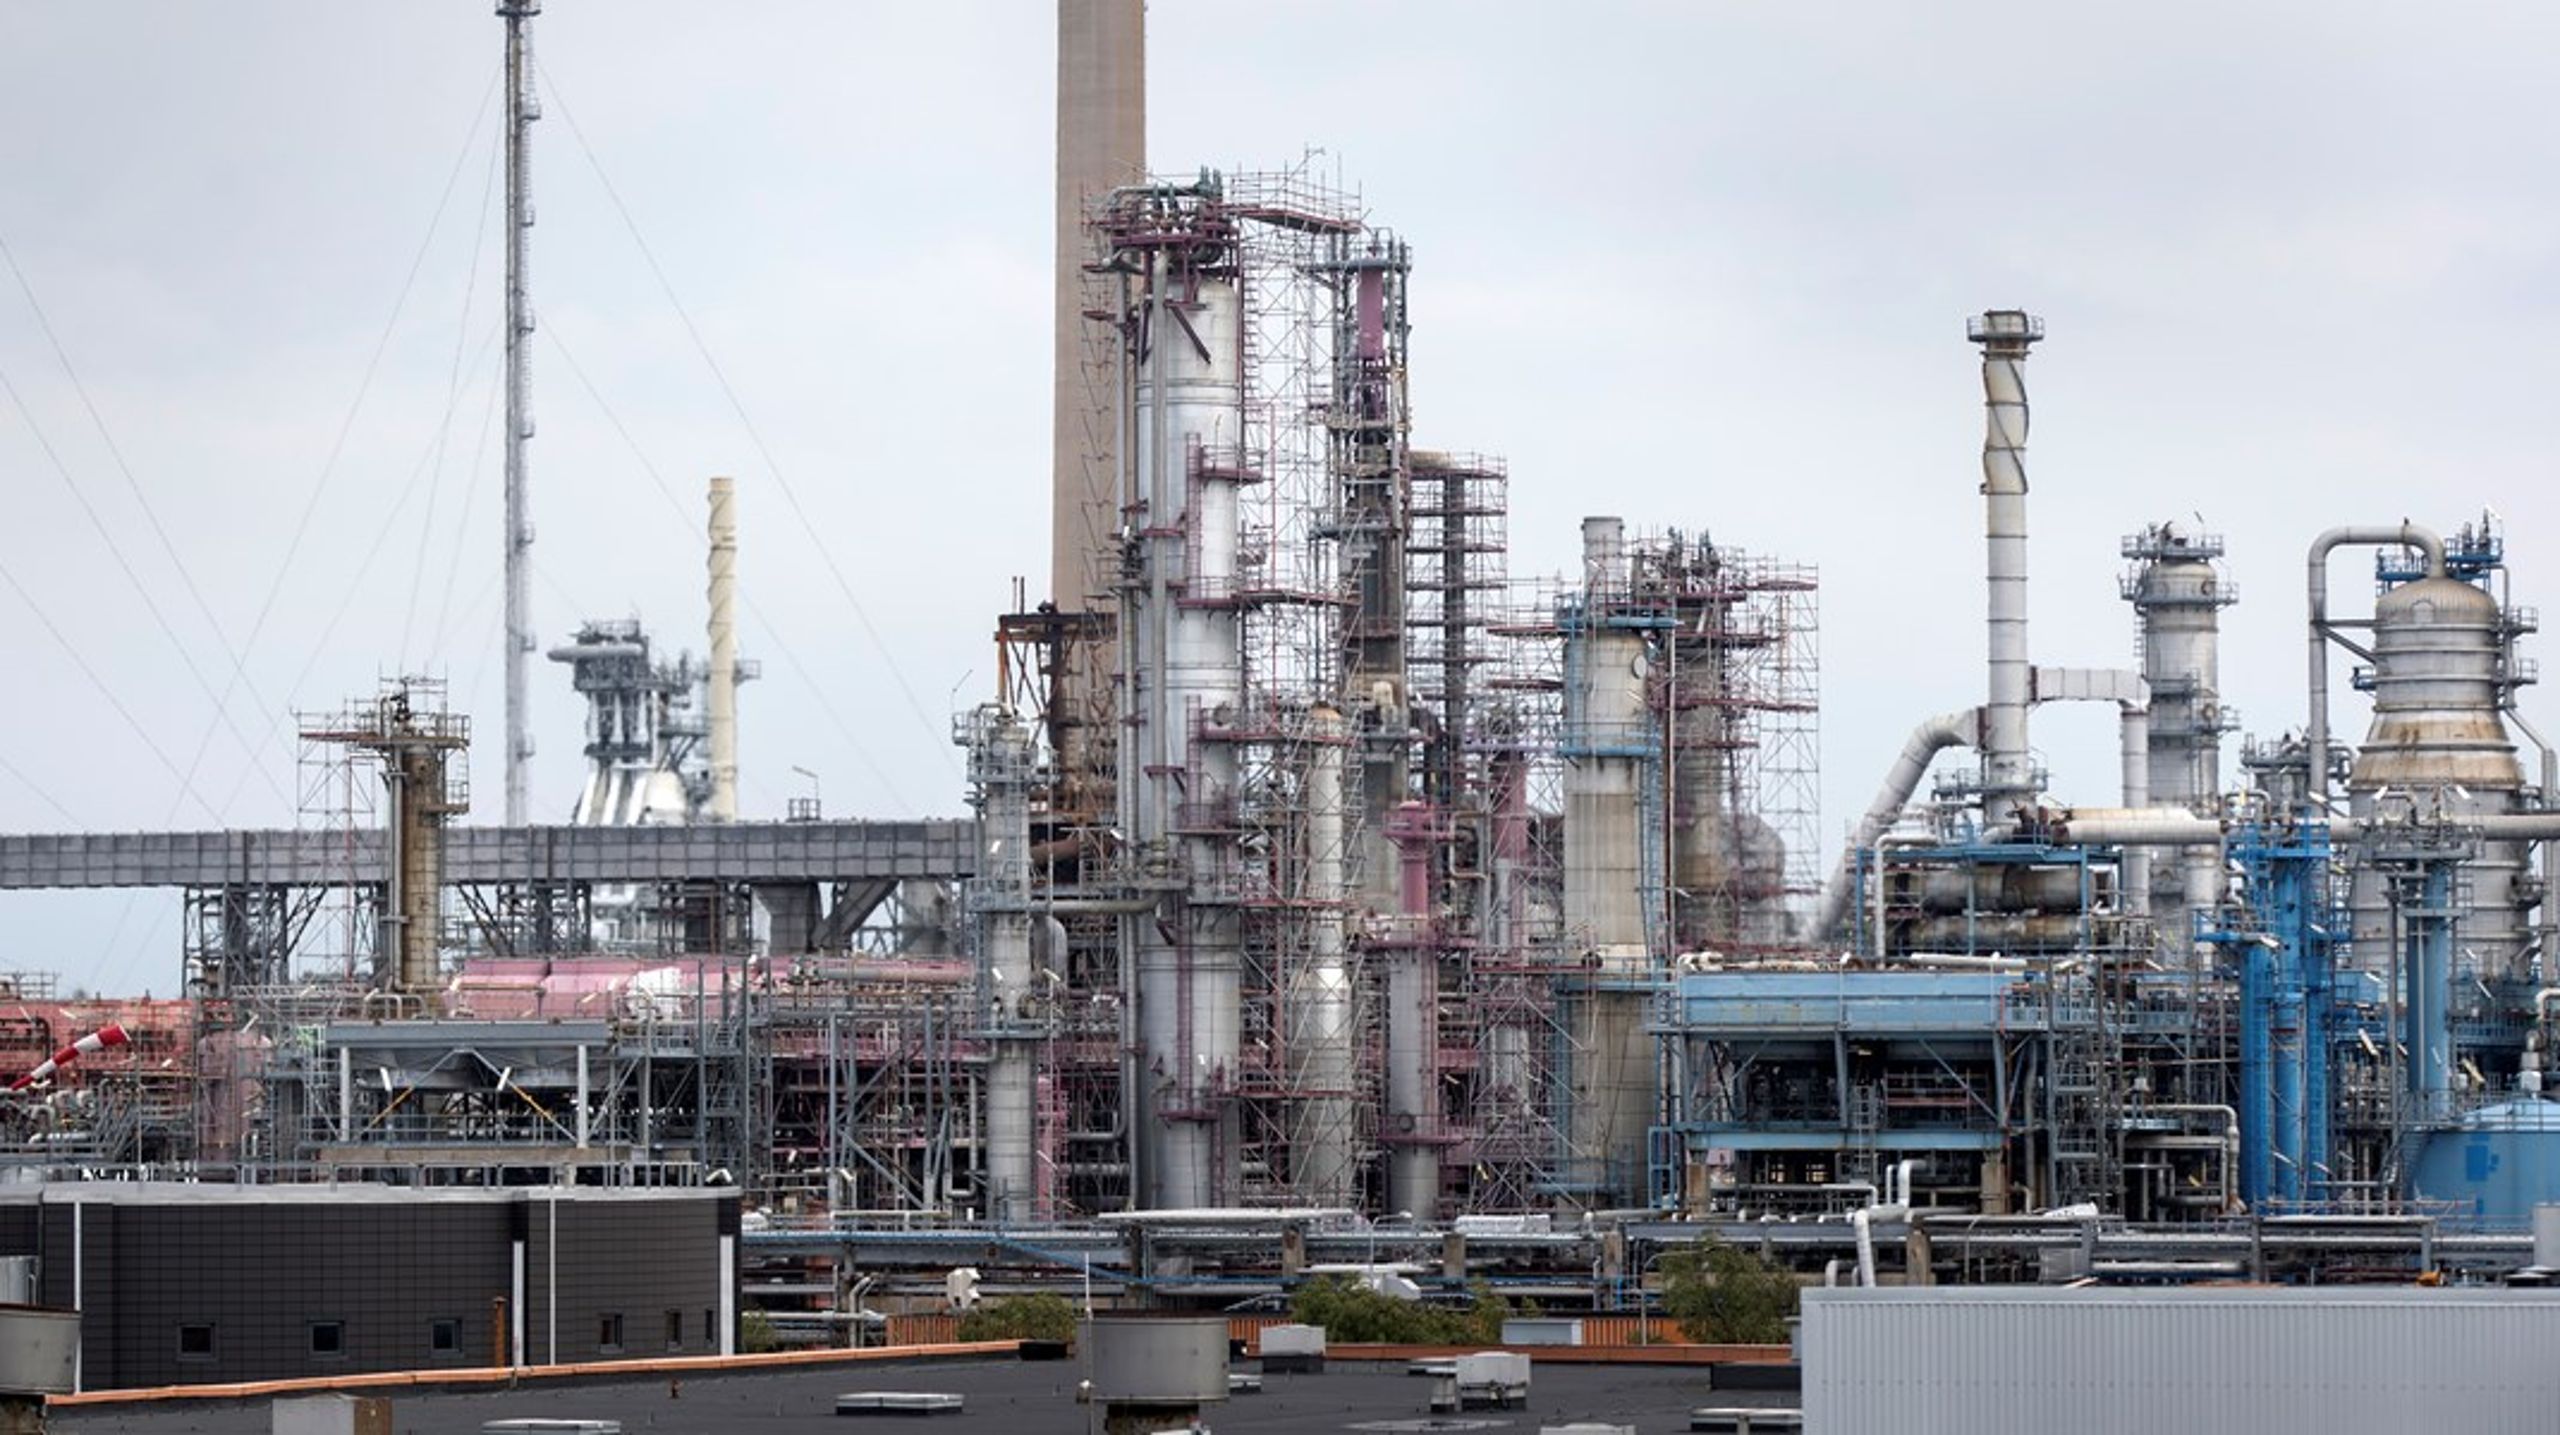 Preems raffinaderi i Lysekil ska ställa om till produktion av förnybara drivmedel. Bolaget kallade de gröna&nbsp;kreditgarantierna för efterlängtade när januaripartierna presenterade nyheten i somras.